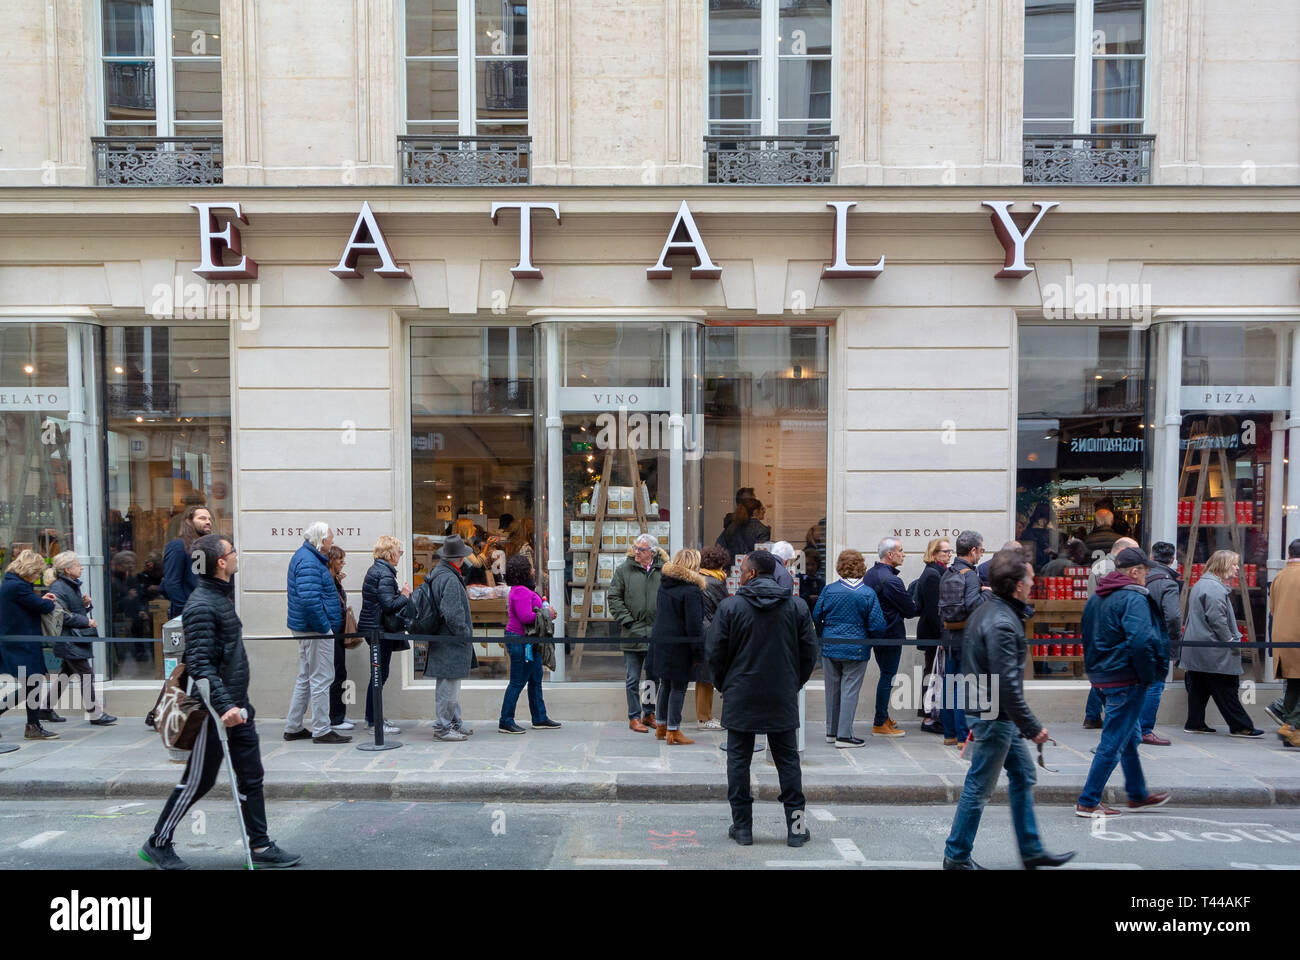 Les gens dans une ligne en attente d'une ouverture d'eataly, un grand food hall avec restaurants et magasins en 2019, Paris, France Banque D'Images